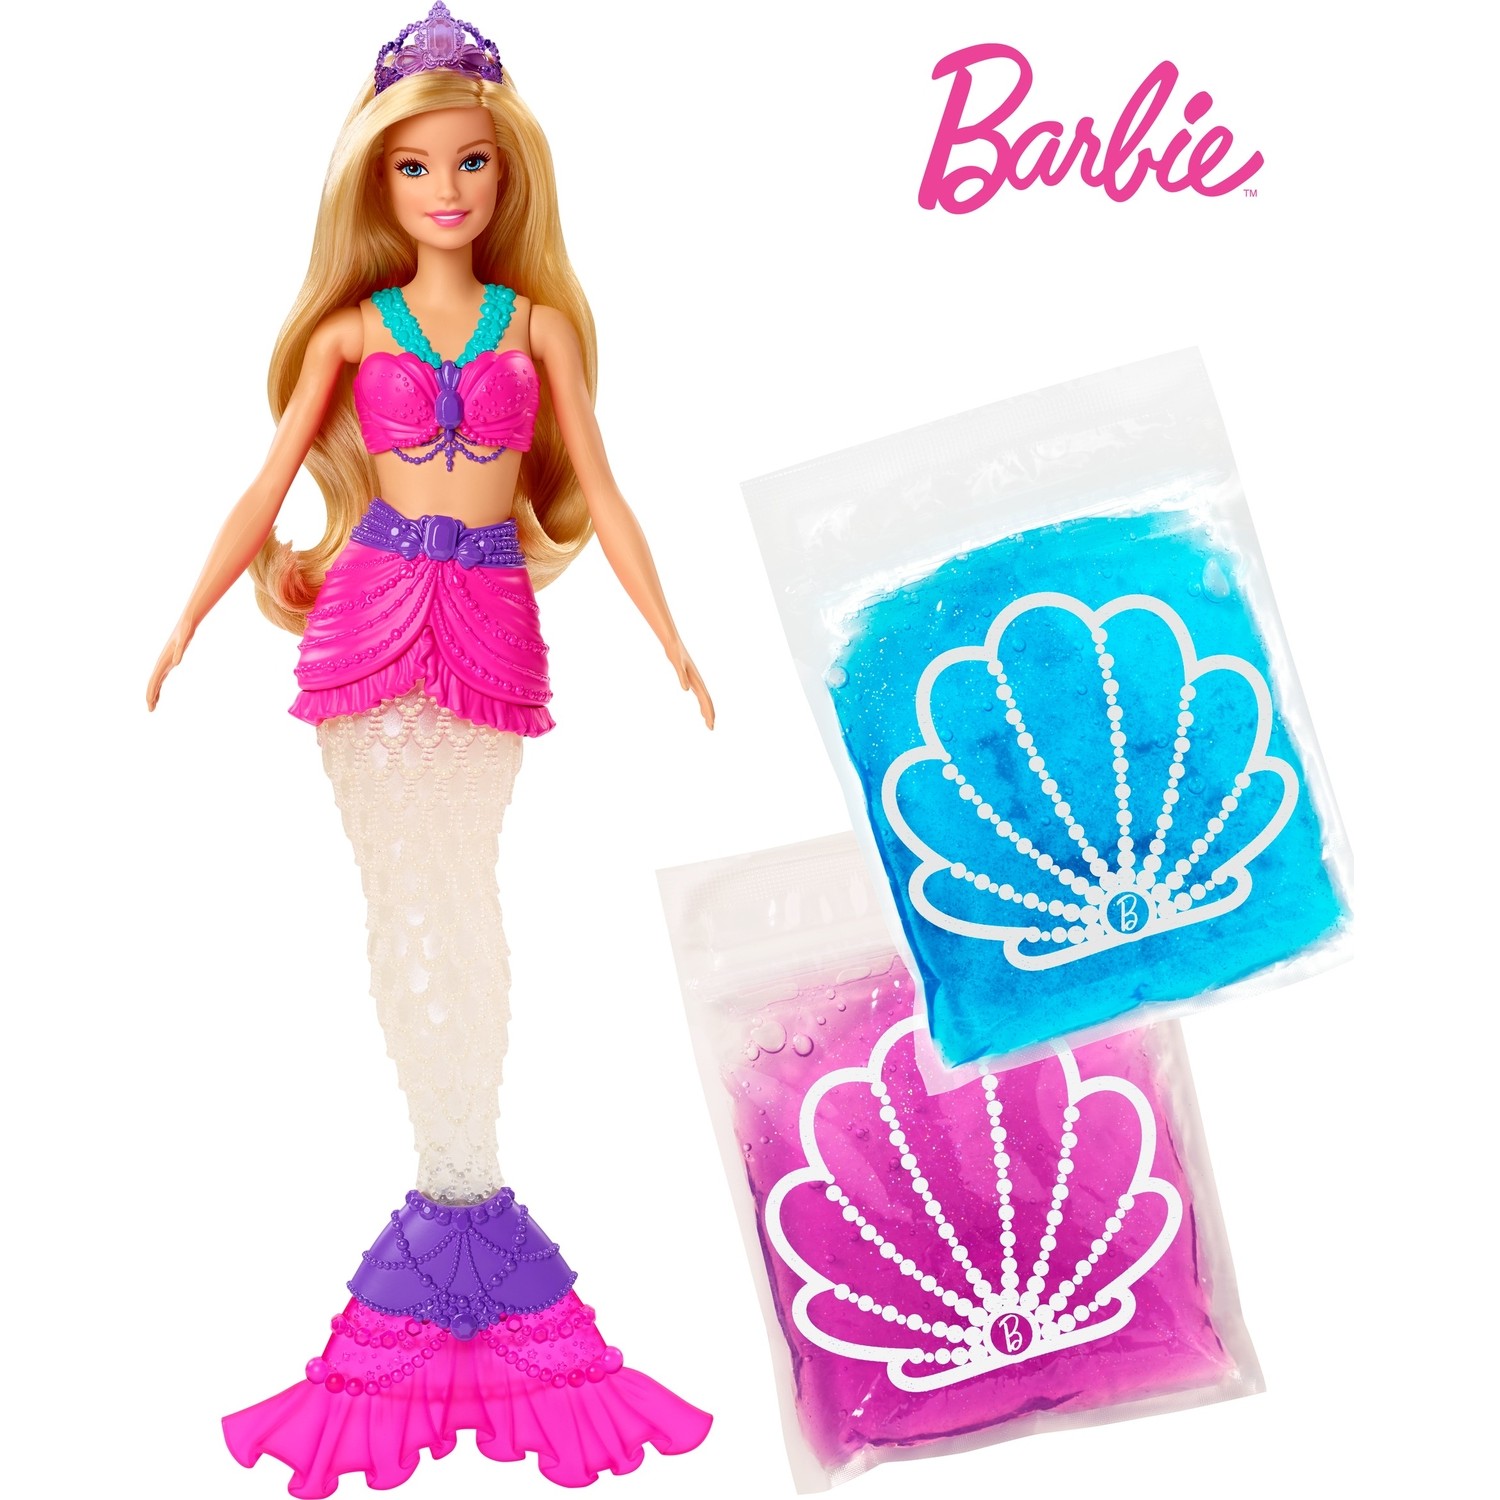 Кукла Barbie Dreamtopia Slime Tailed Mermaid GKT75 кукла barbie dreamtopia mermaid fjc92